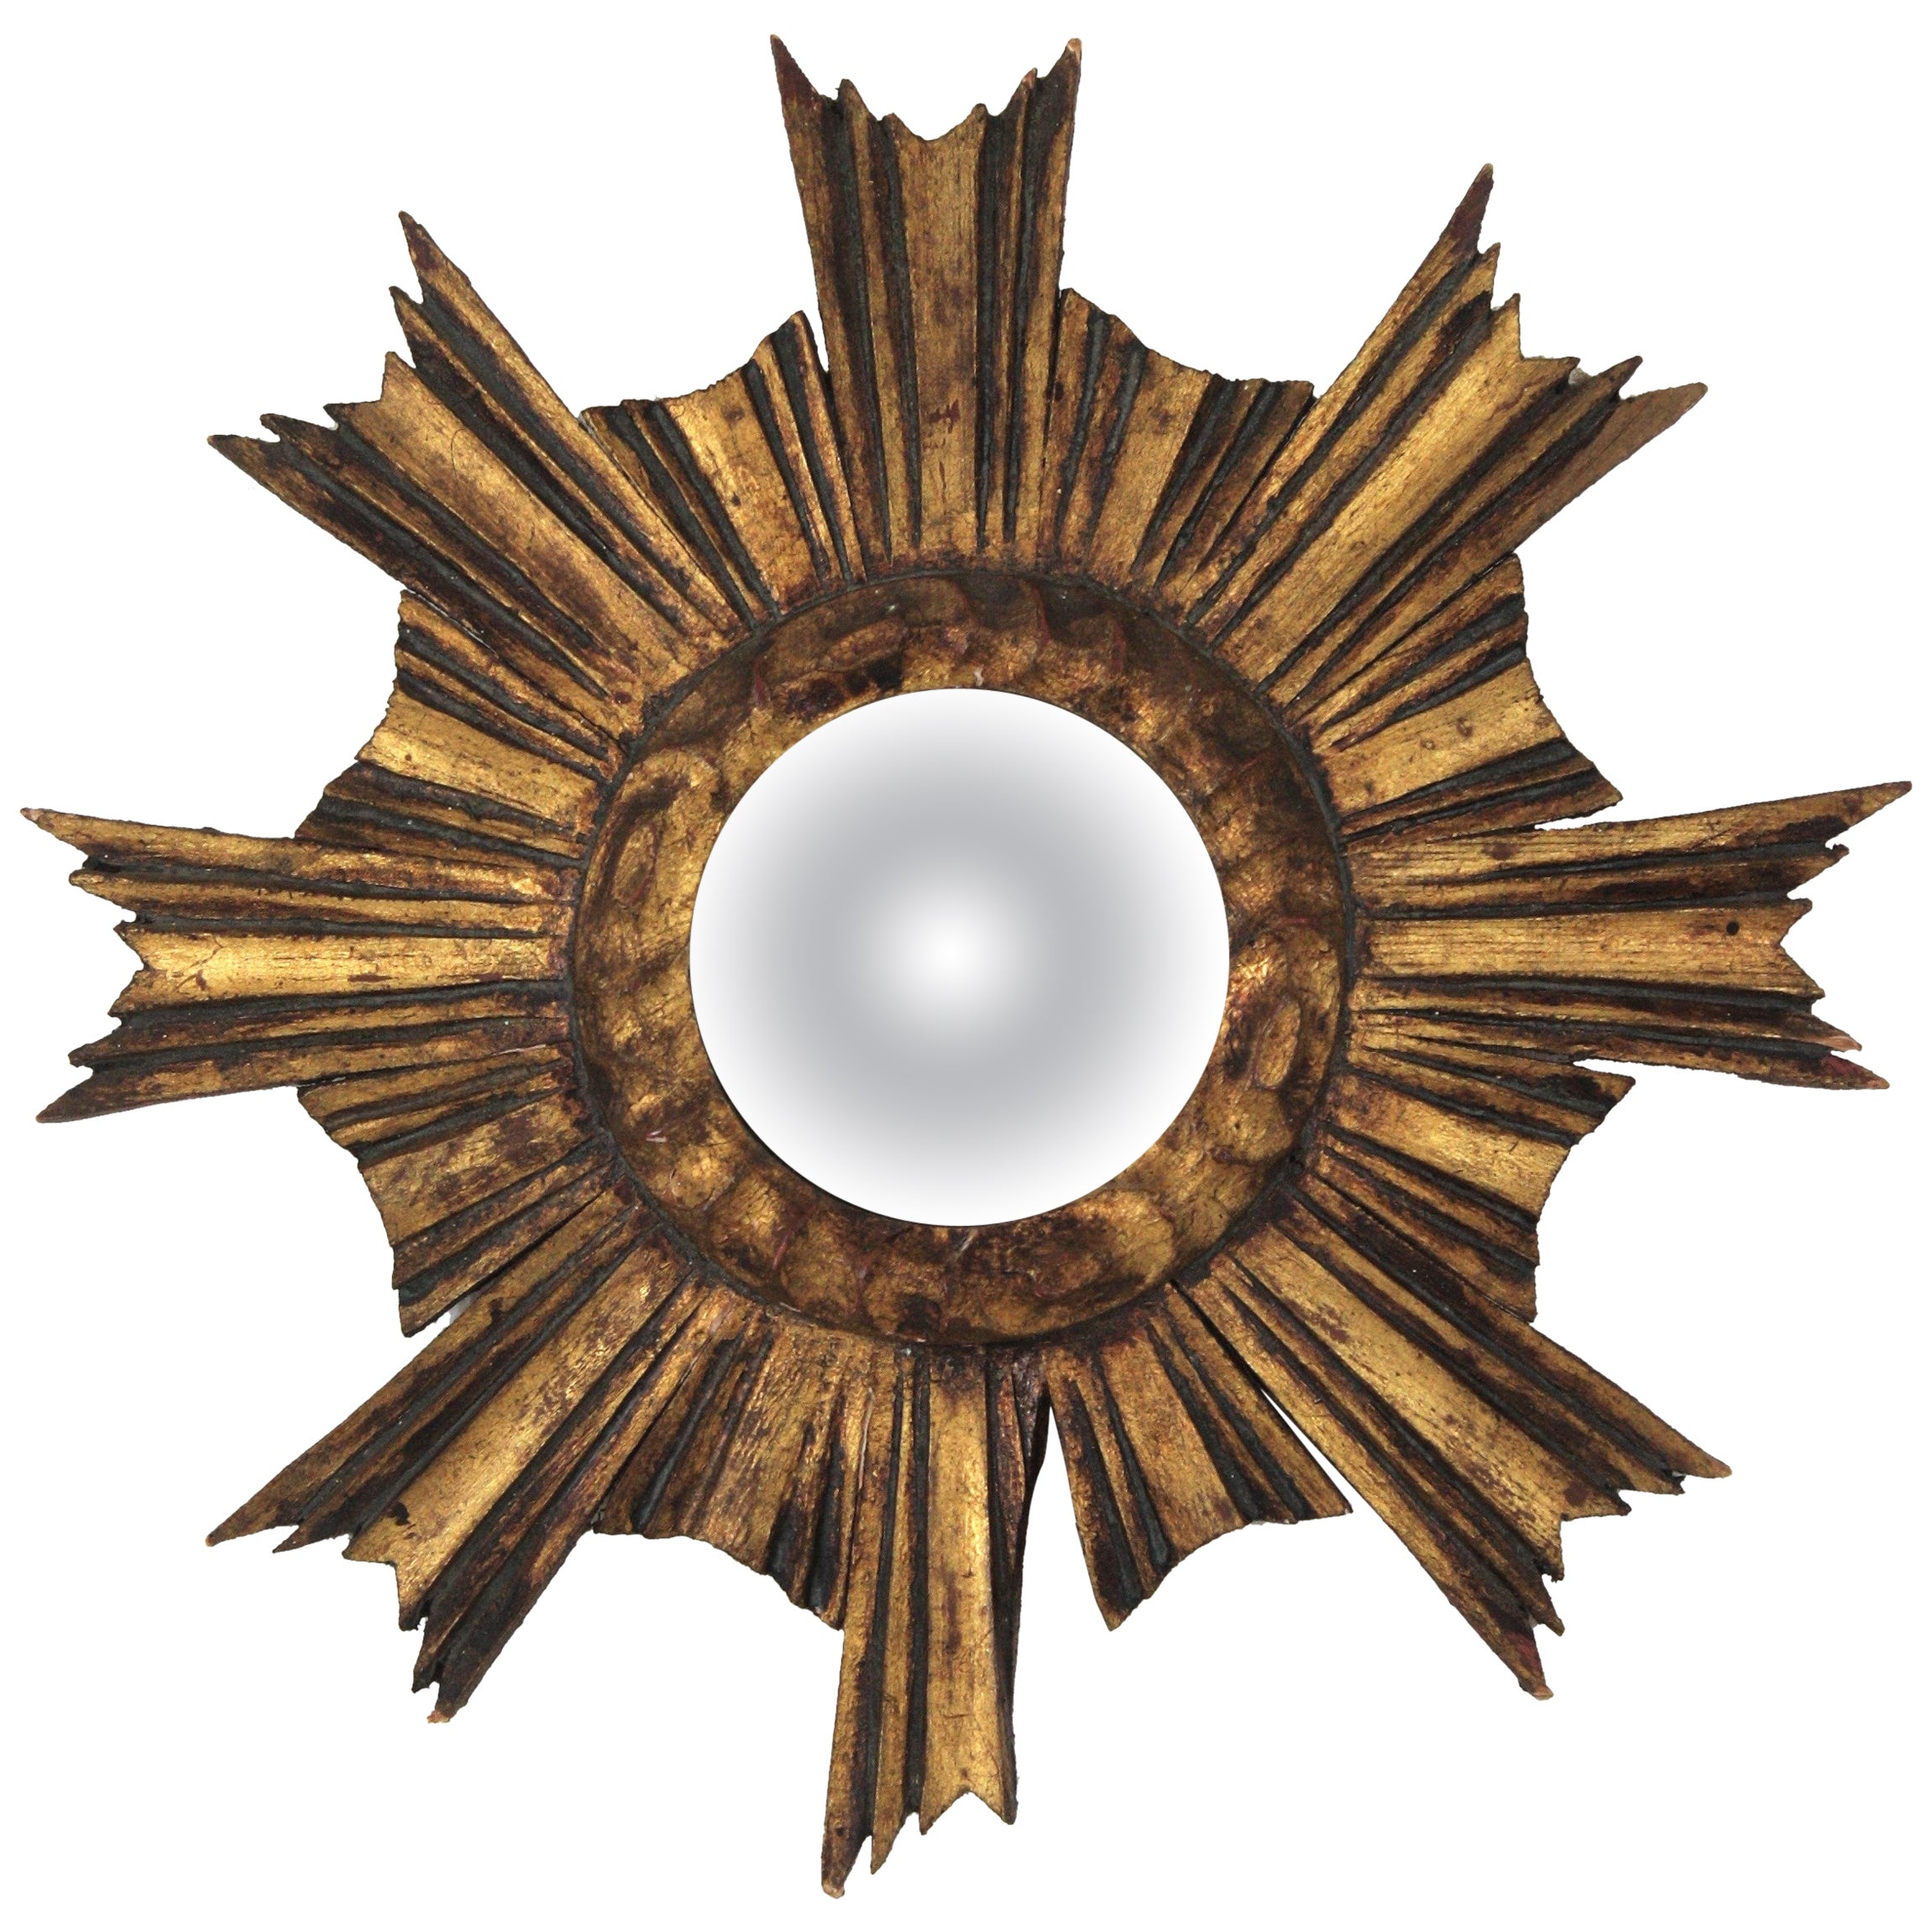 Spanish Baroque Sunburst Giltwood Convex Mirror in Small Scale